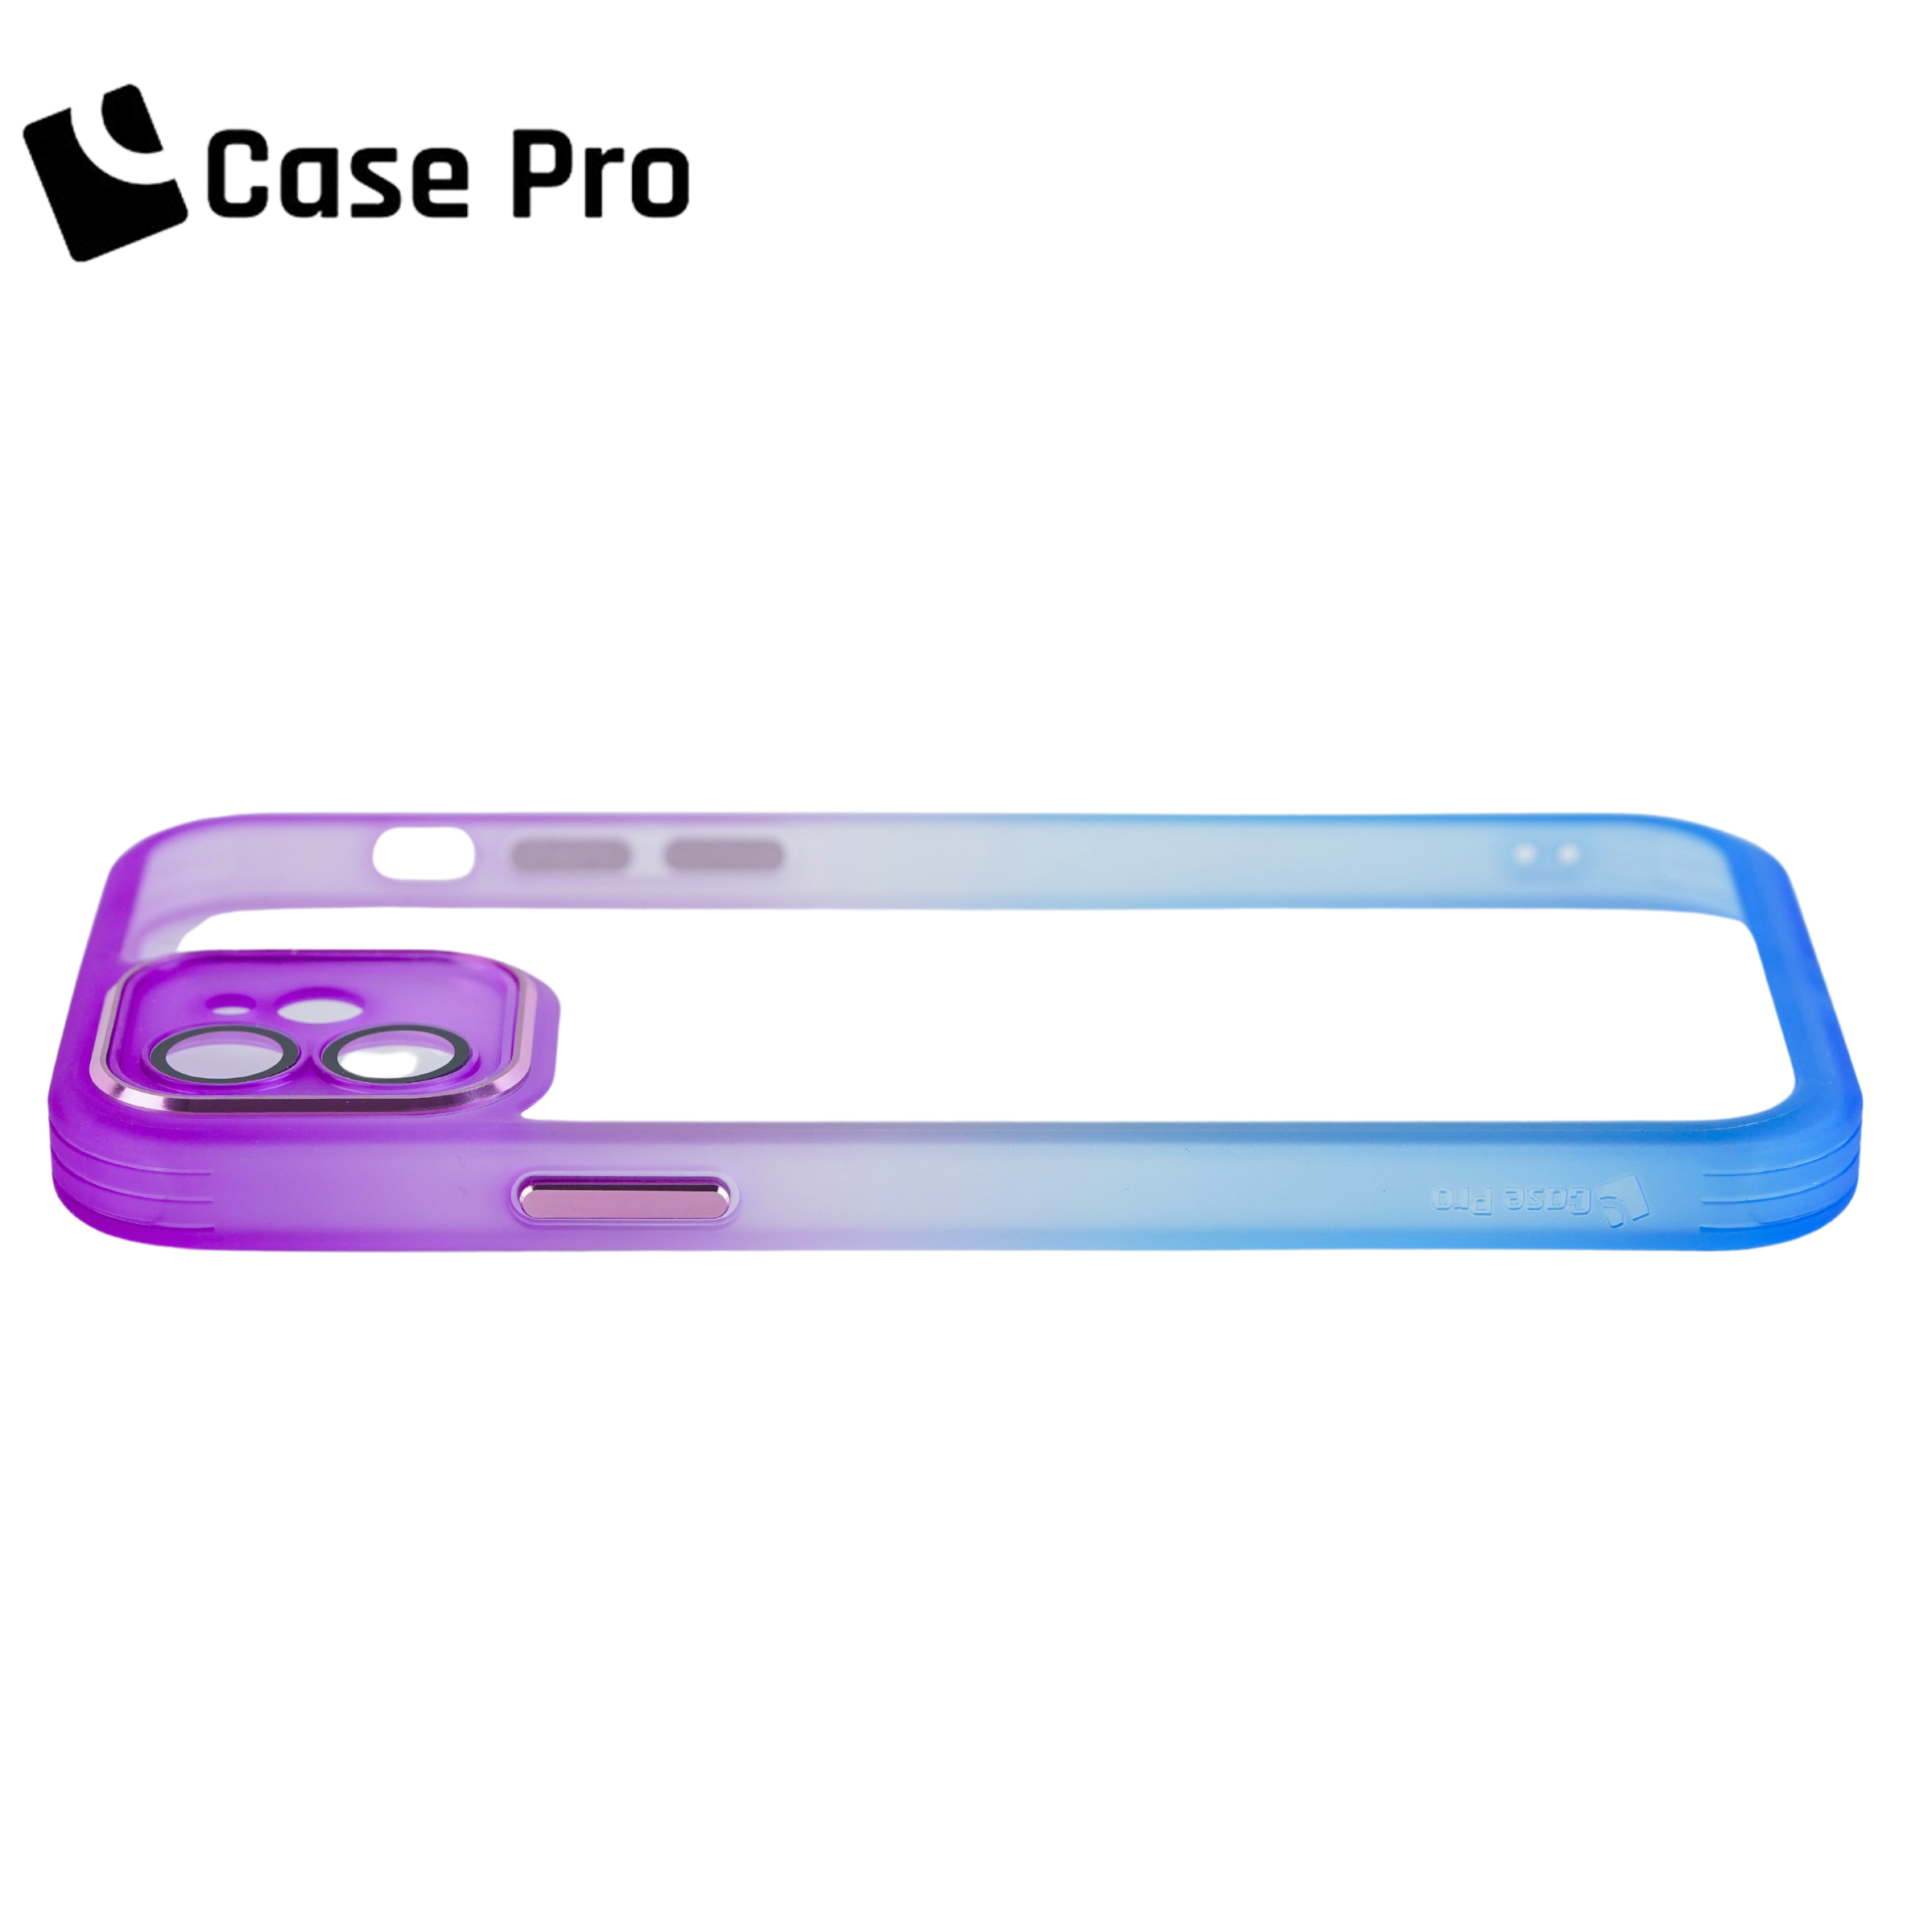 CASE PRO iPhone 12 Case (Color Gradient)